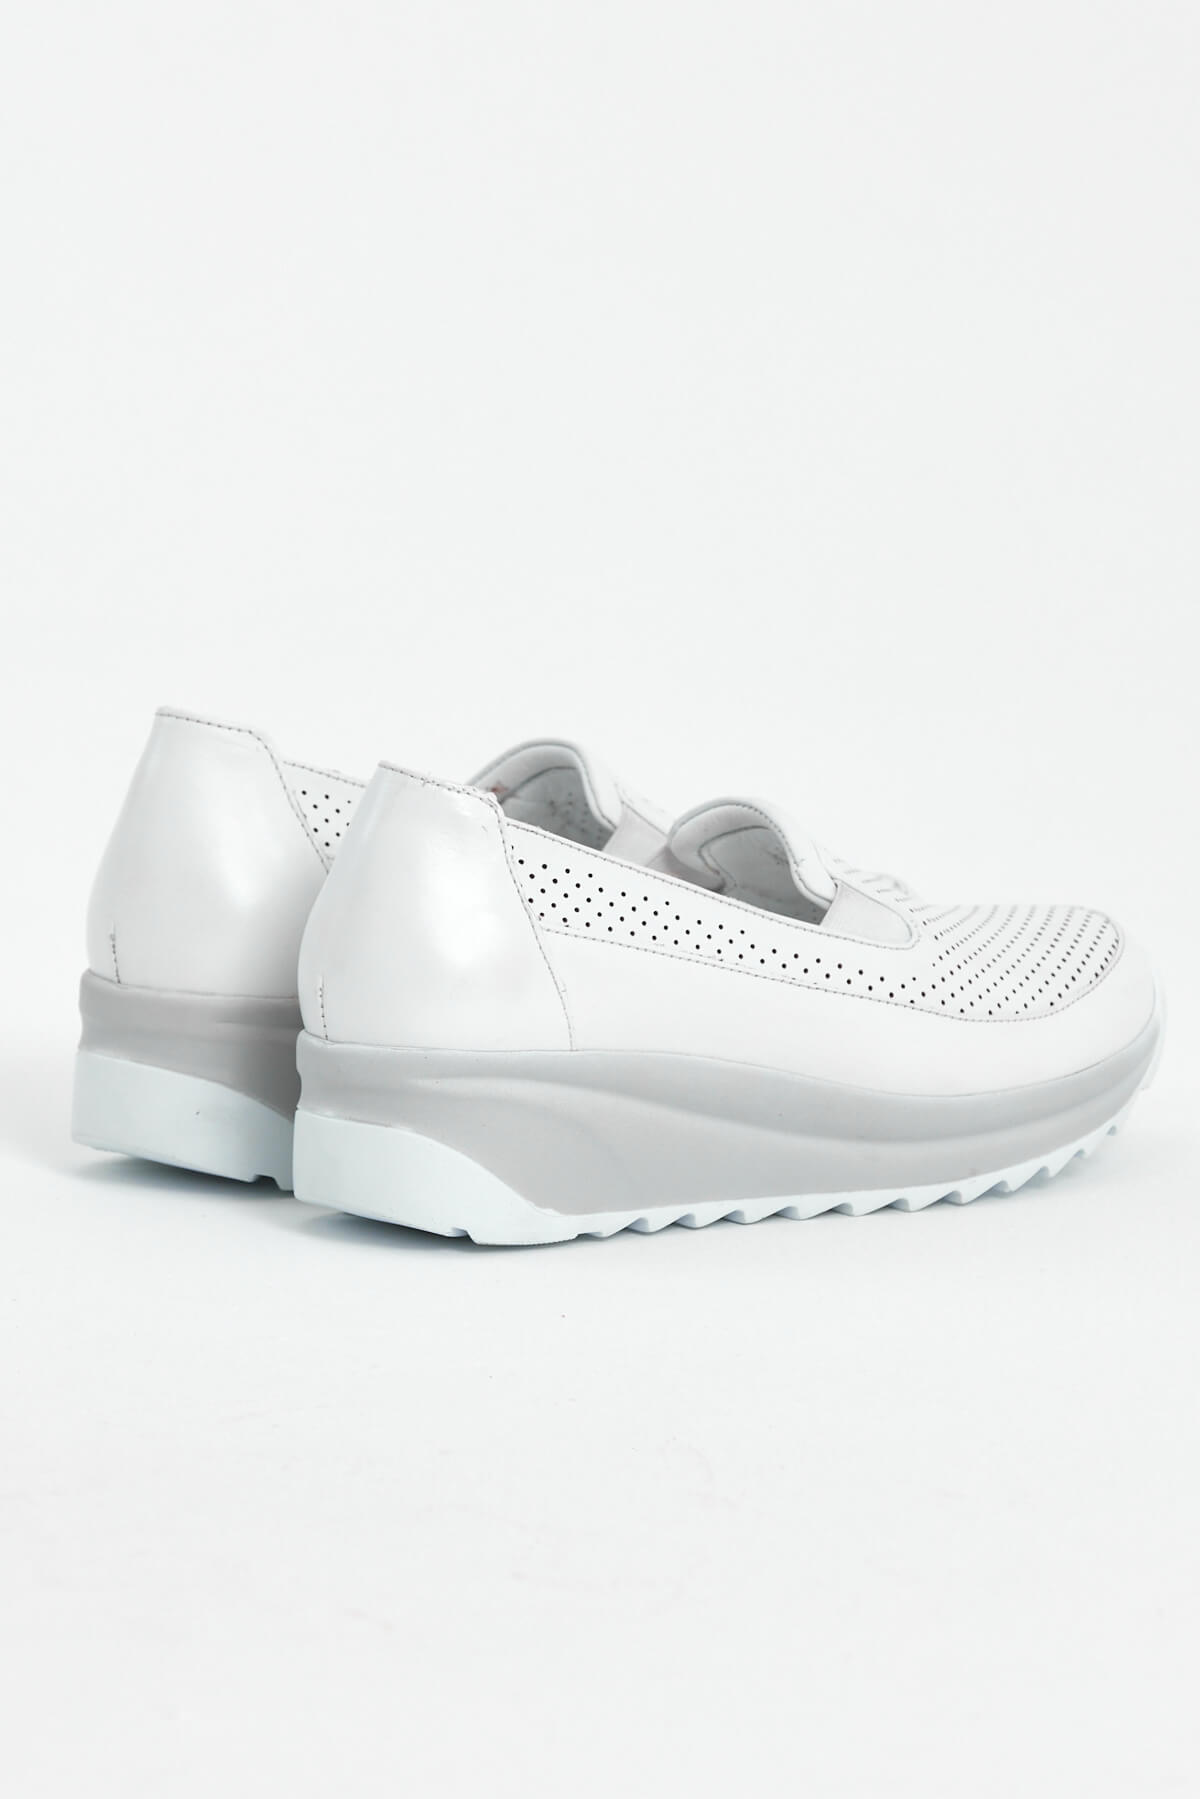 Kadın Dolgu Topuk Deri Sneakers Beyaz 2310302Y